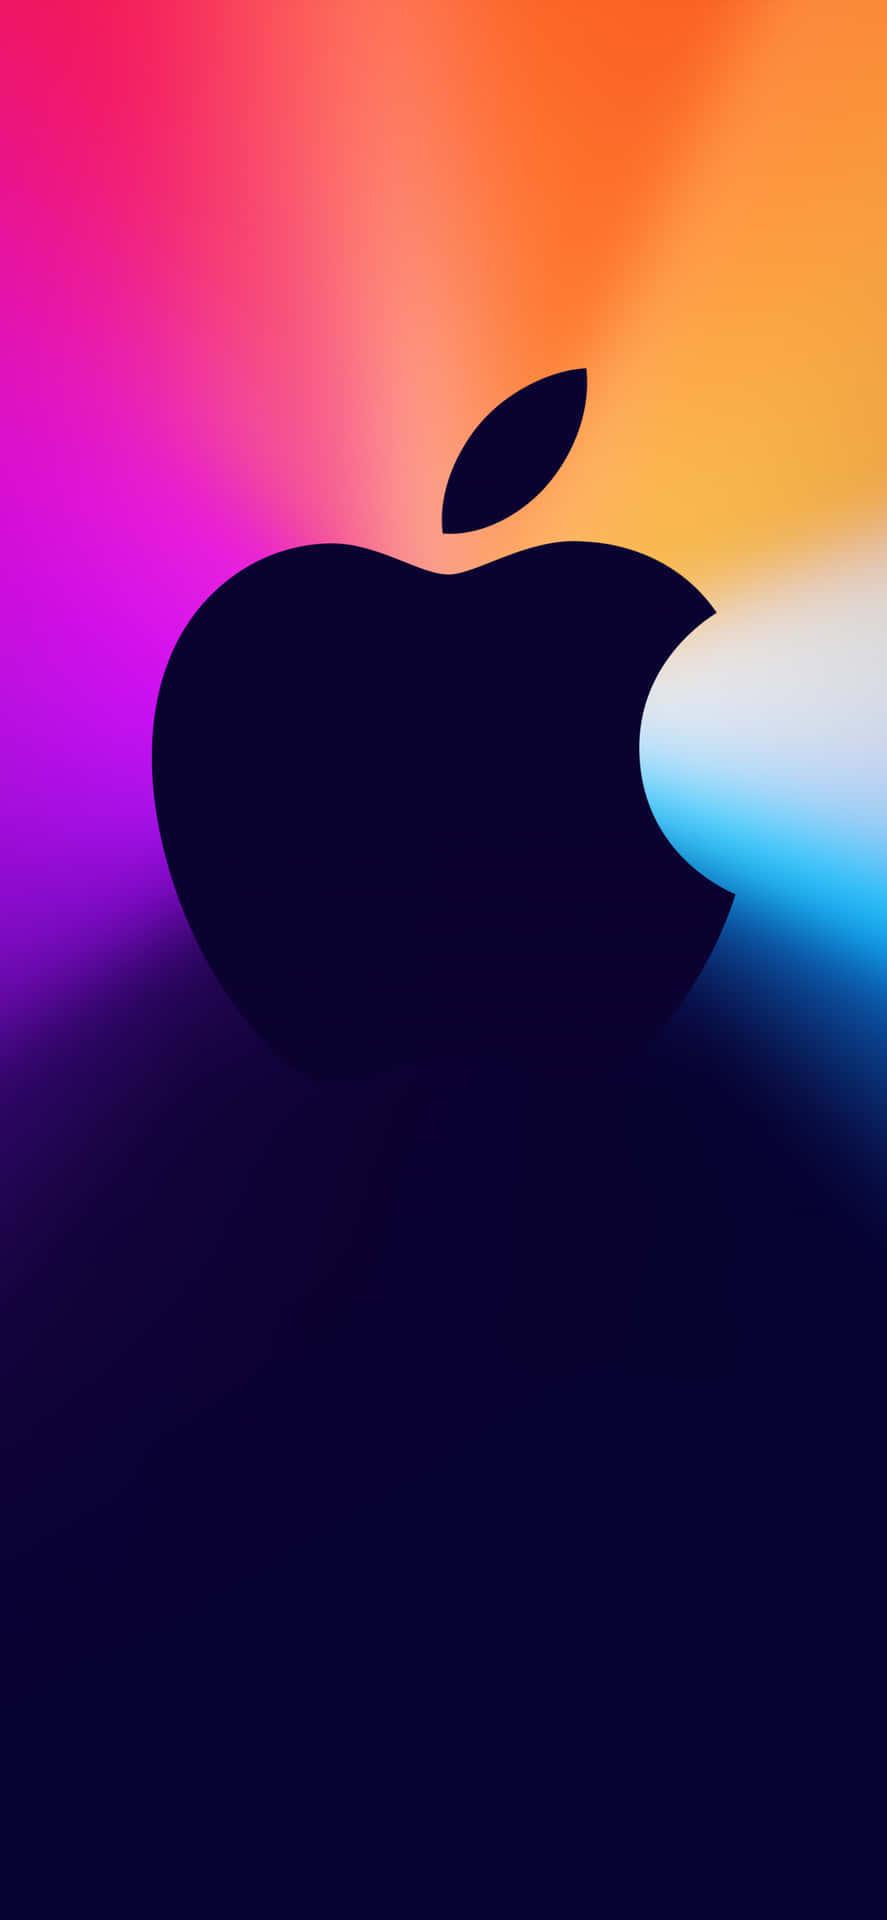 Illuminated Apple Logo on Iphone X Wallpaper